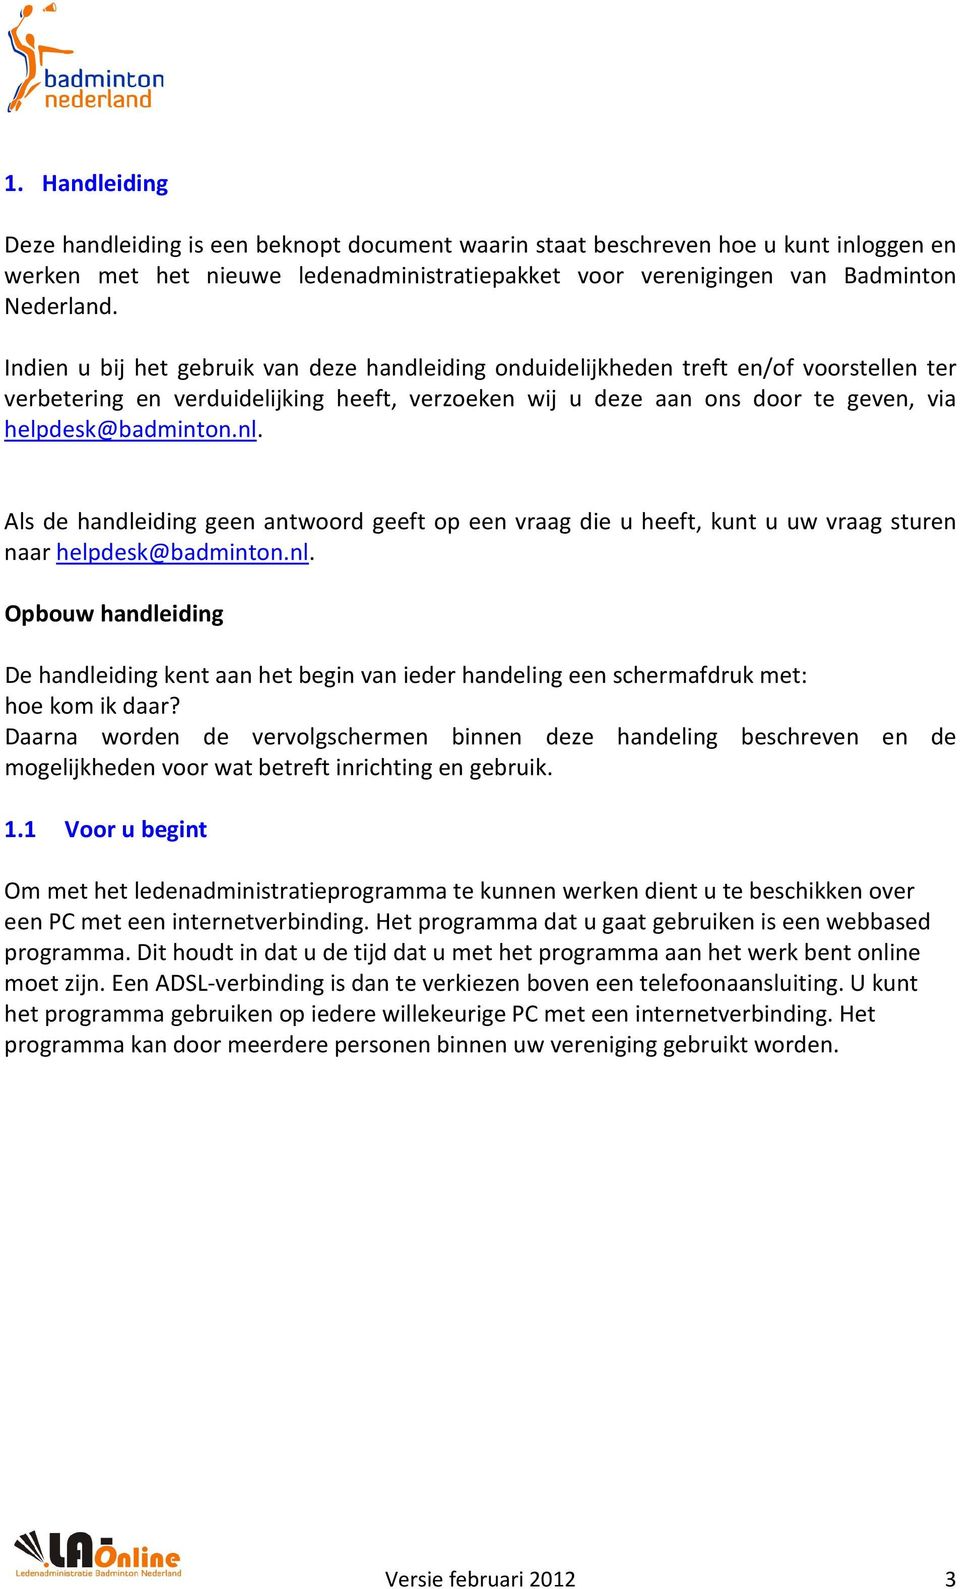 Als de handleiding geen antwoord geeft op een vraag die u heeft, kunt u uw vraag sturen naar helpdesk@badminton.nl.